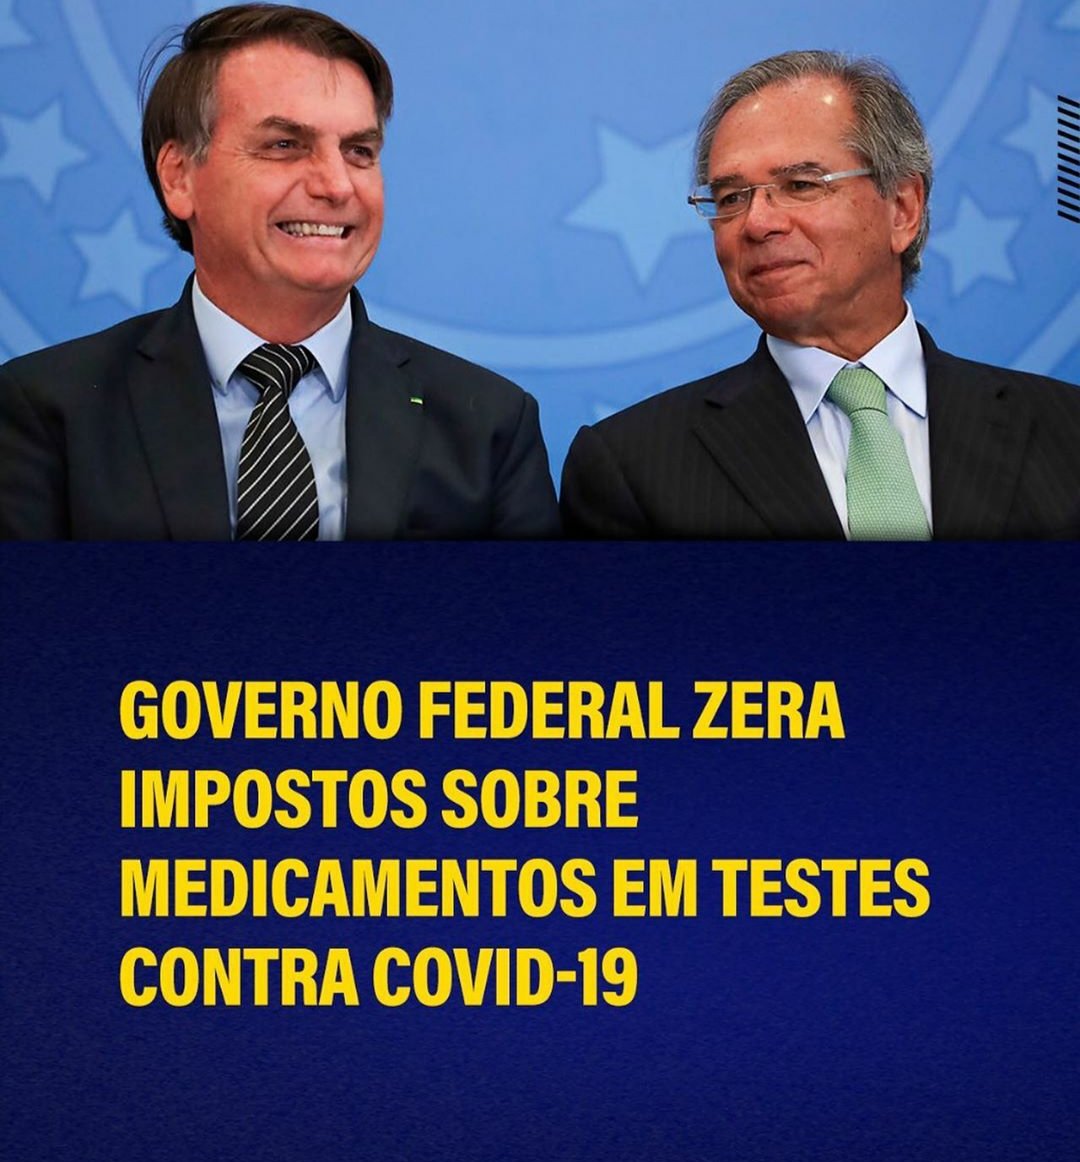 E- Nova lista de redução tarifária inclui mais de 80 medicamentos considerados essenciais pelos municípios brasileiros no enfrentamento do covid-19. No total, são 509 produtos com imposto de importação zerados.  @MinEconomia . Detalhes:  http://gov.br/economia 